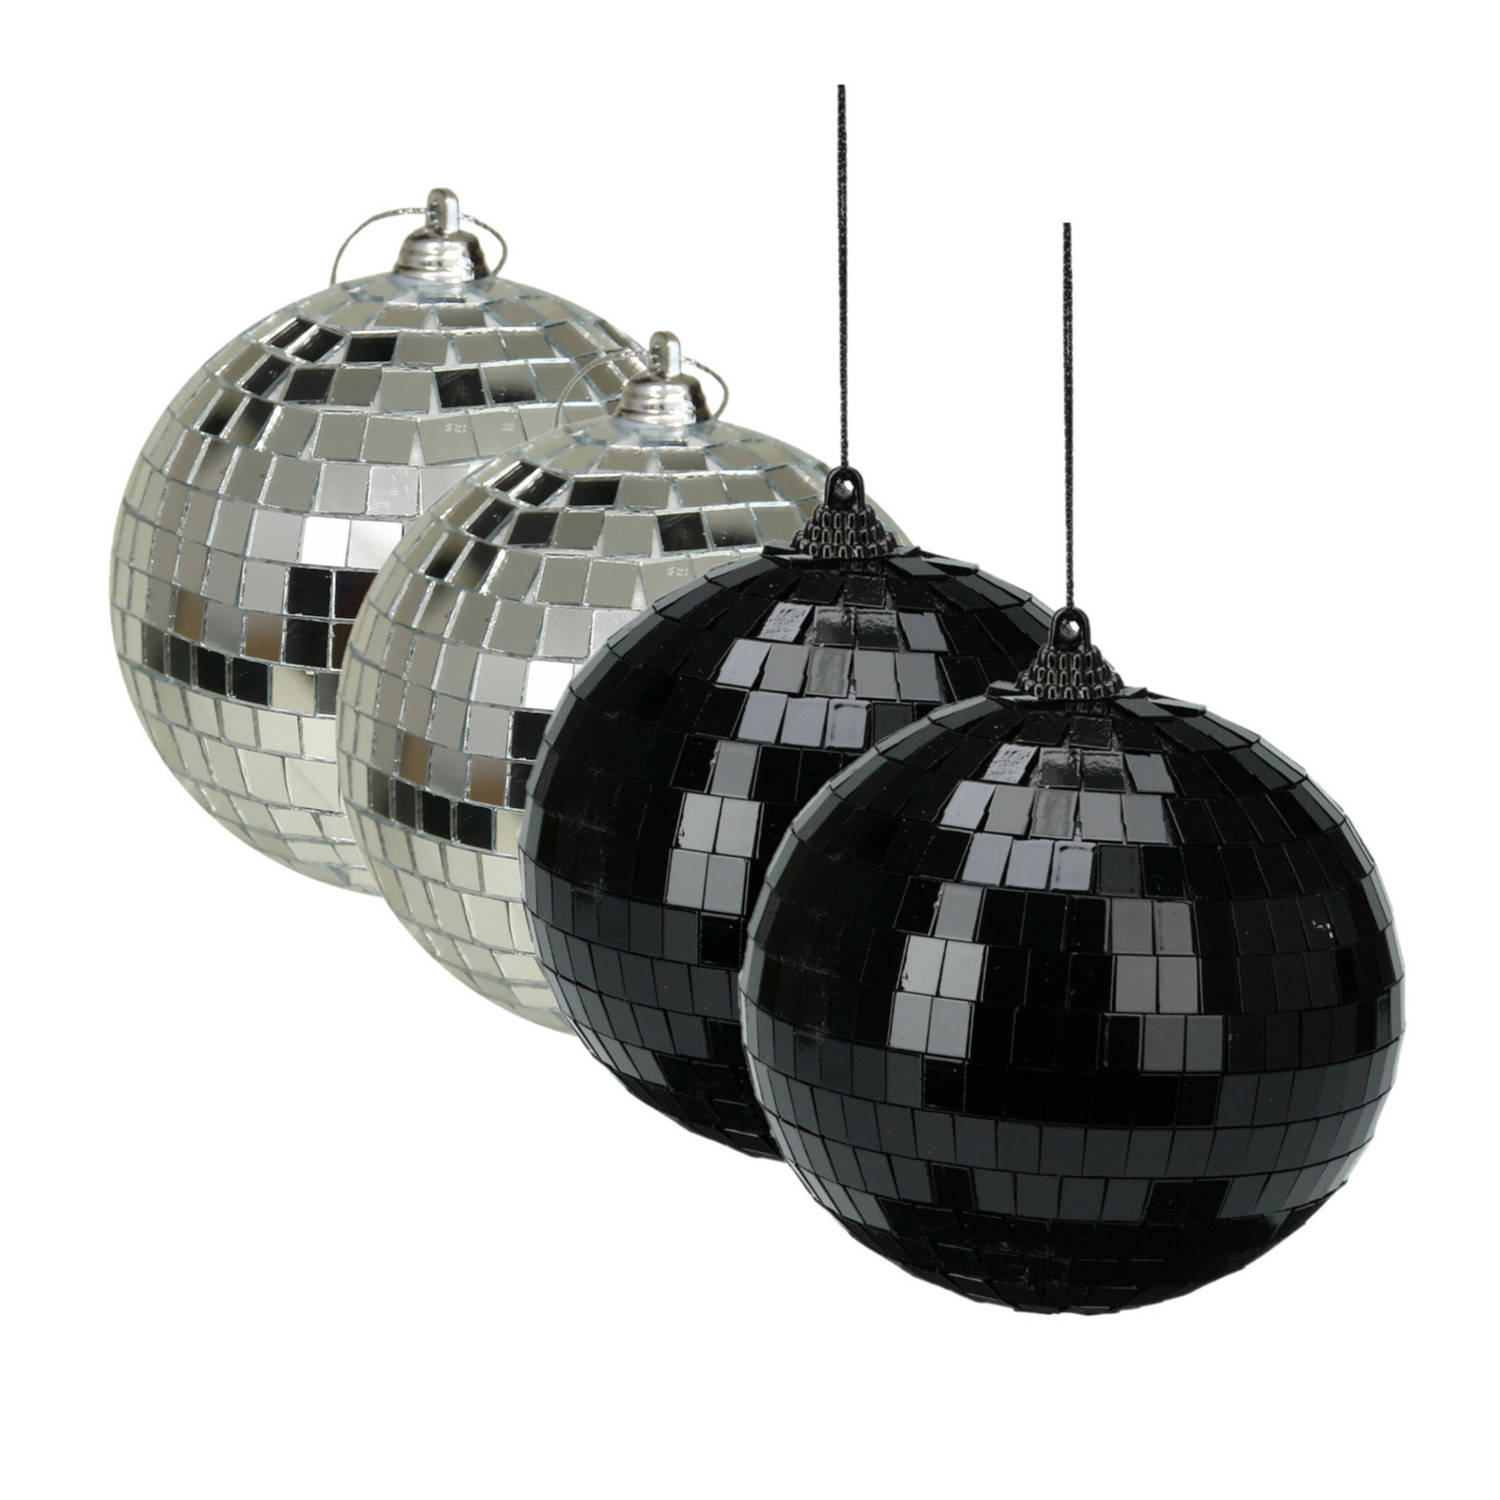 Grote discobal kerstballen 2x stuks zilver 10 cm kunststof Kerstbal